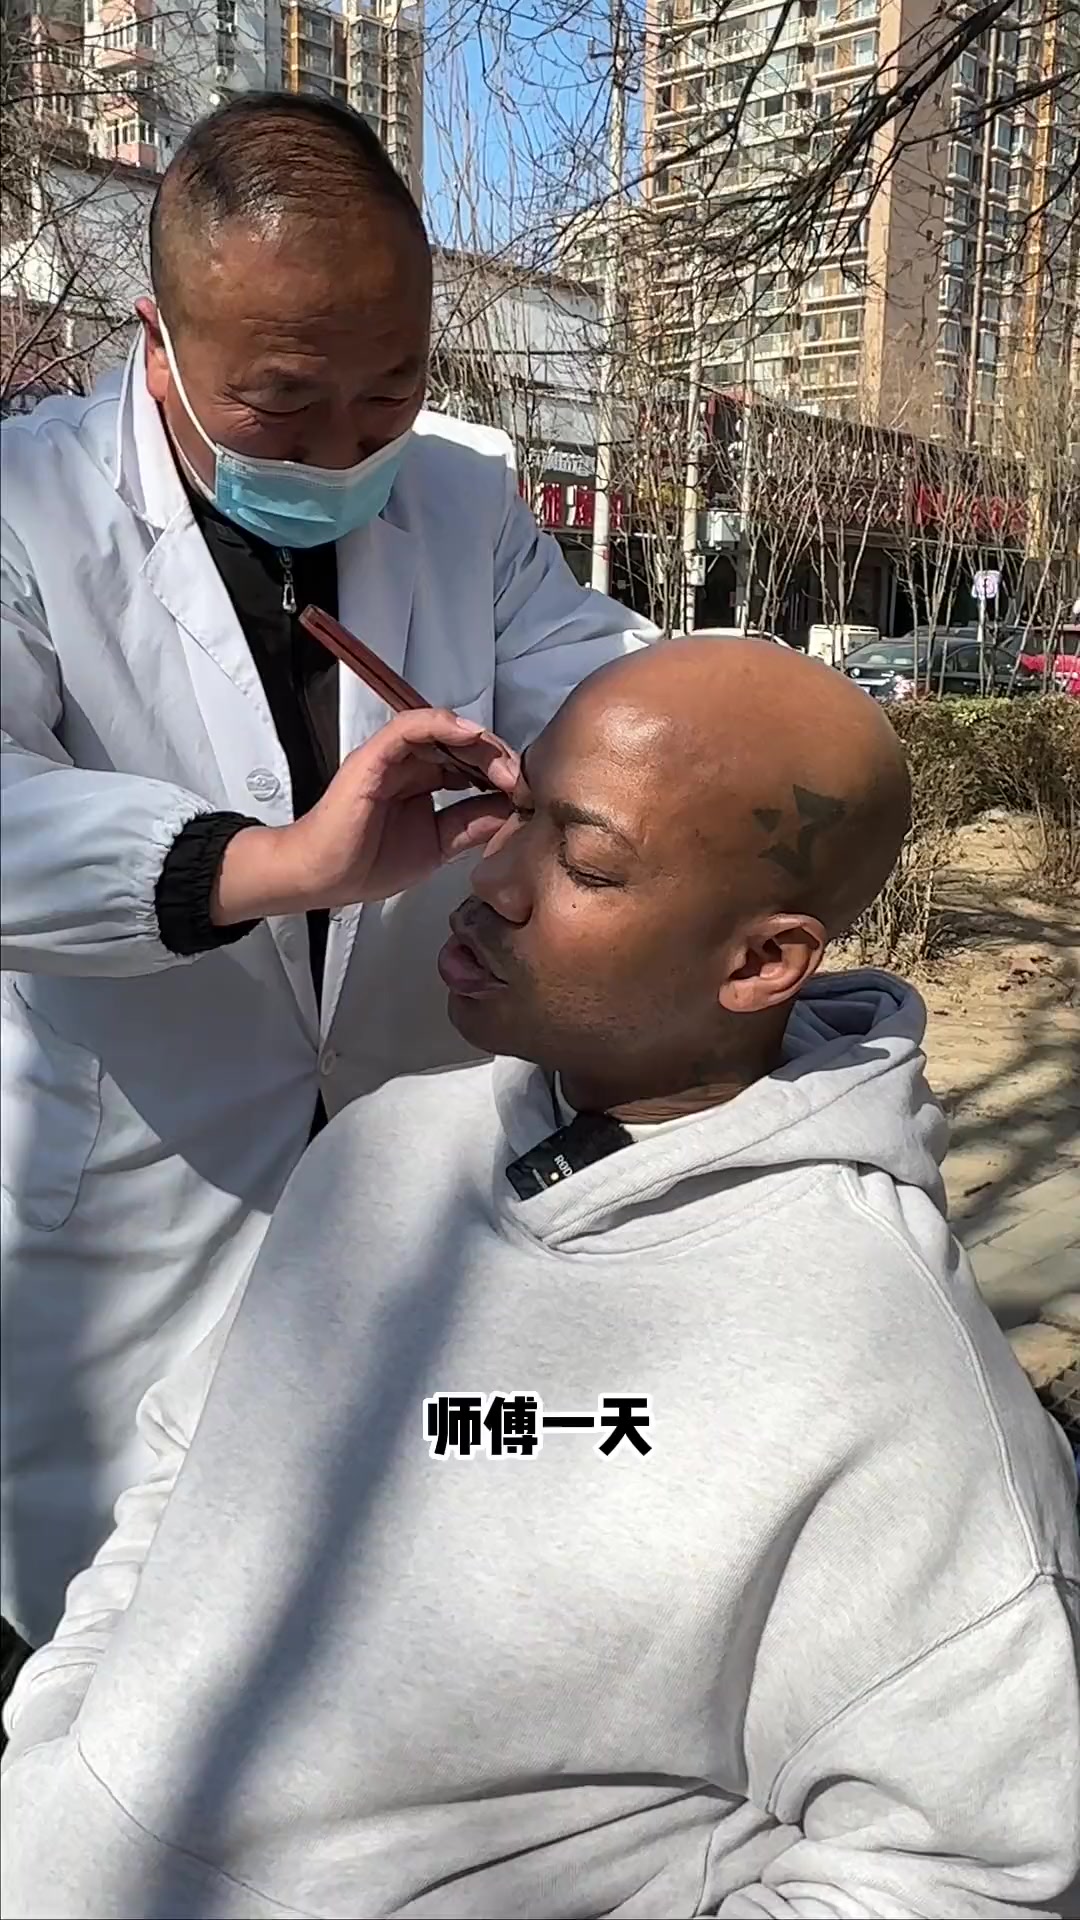 马布里普通话vlog：今天去街边找师傅剃头刮脸